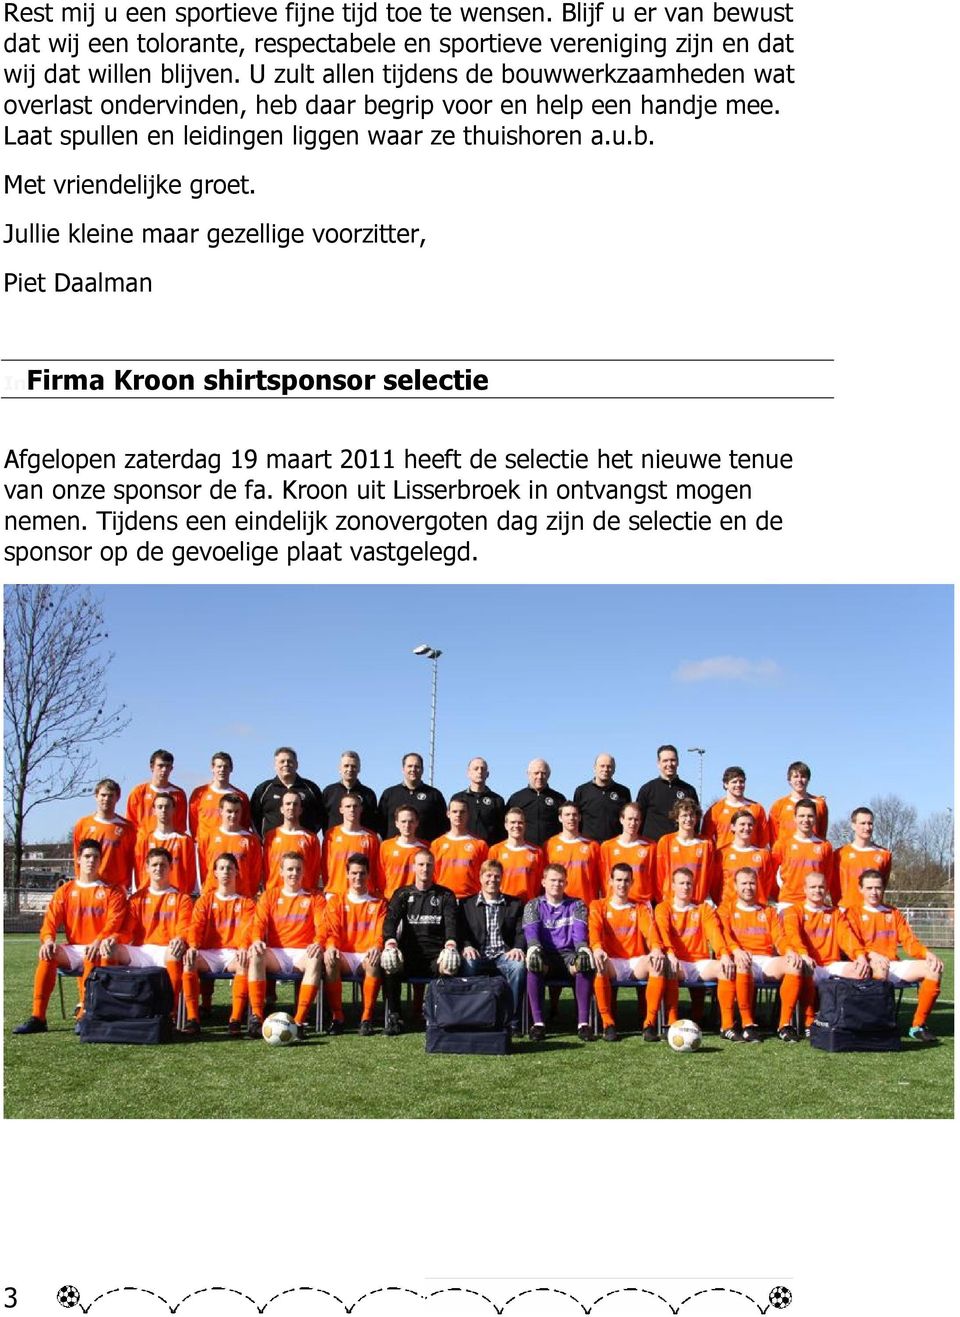 Jullie kleine maar gezellige voorzitter, Piet Daalman InFirma Kroon shirtsponsor selectie Afgelopen zaterdag 19 maart 2011 heeft de selectie het nieuwe tenue van onze sponsor